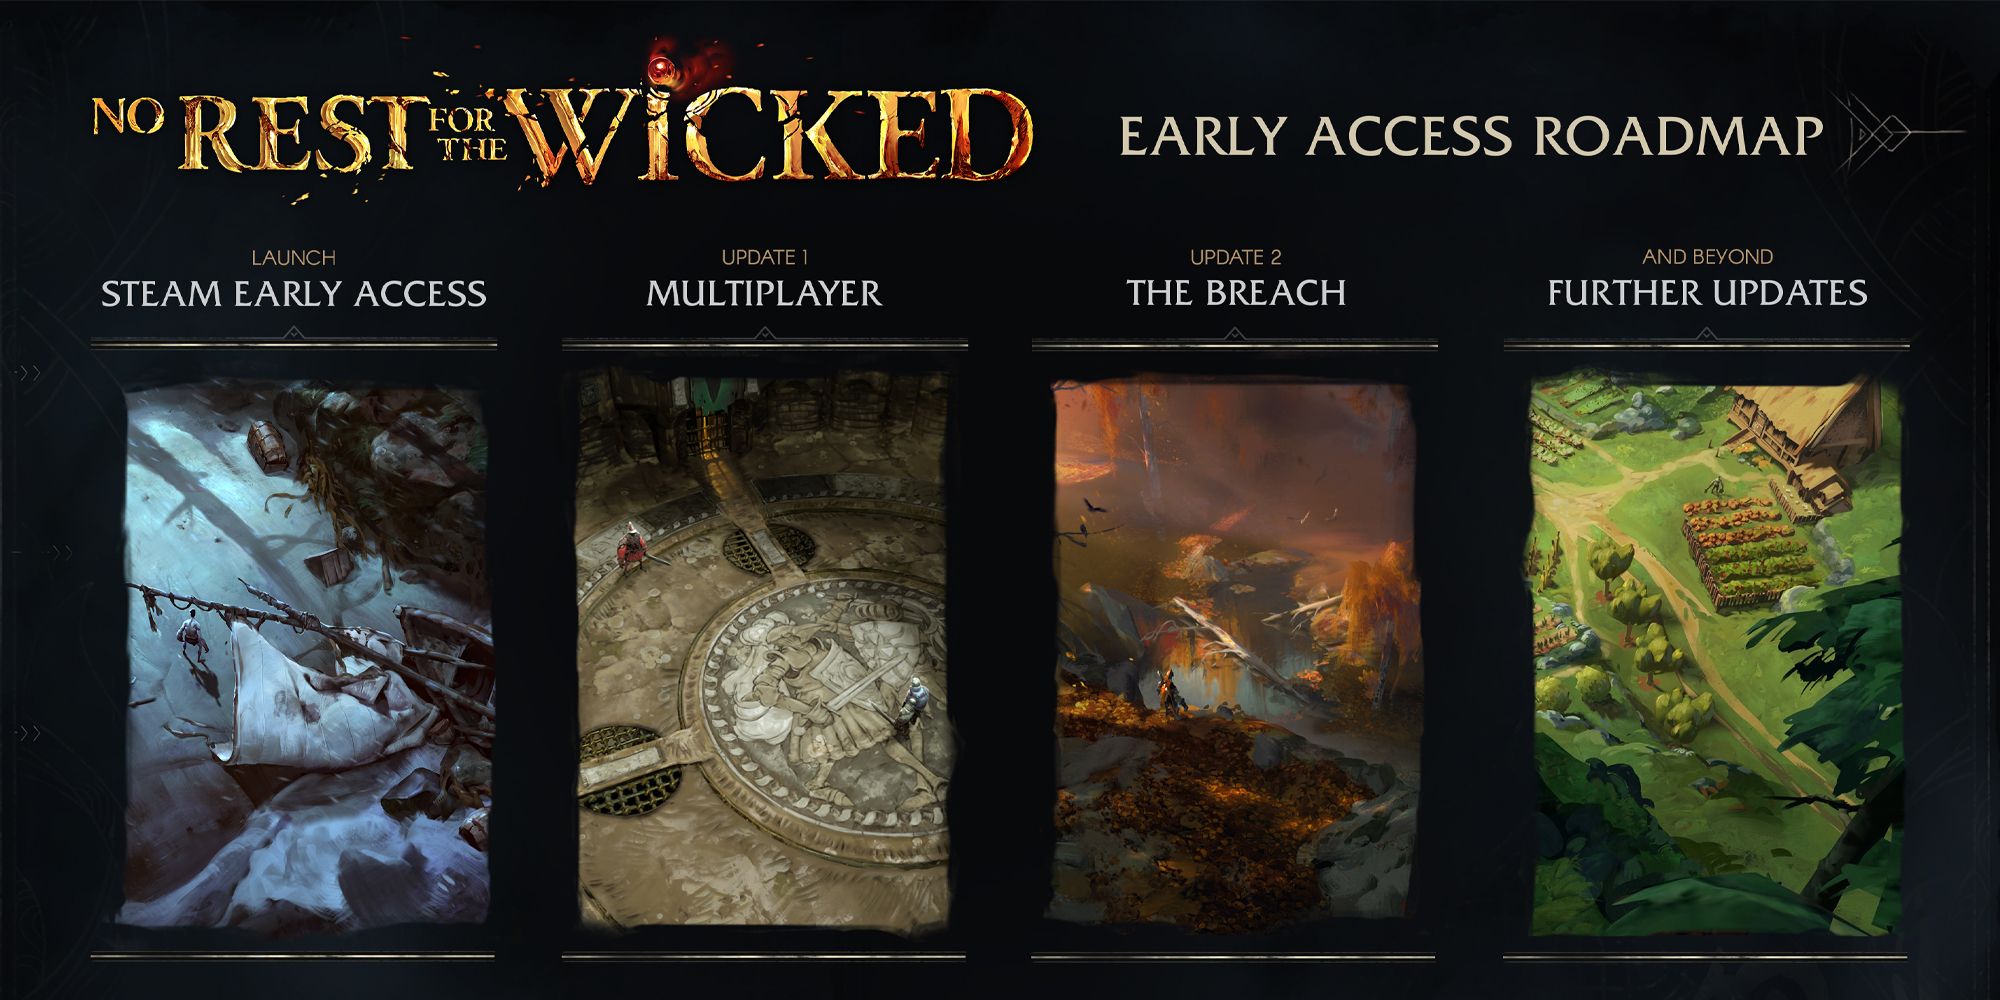 Roteiro de acesso antecipado de No Rest For The Wicked mostrando duas atualizações futuras.